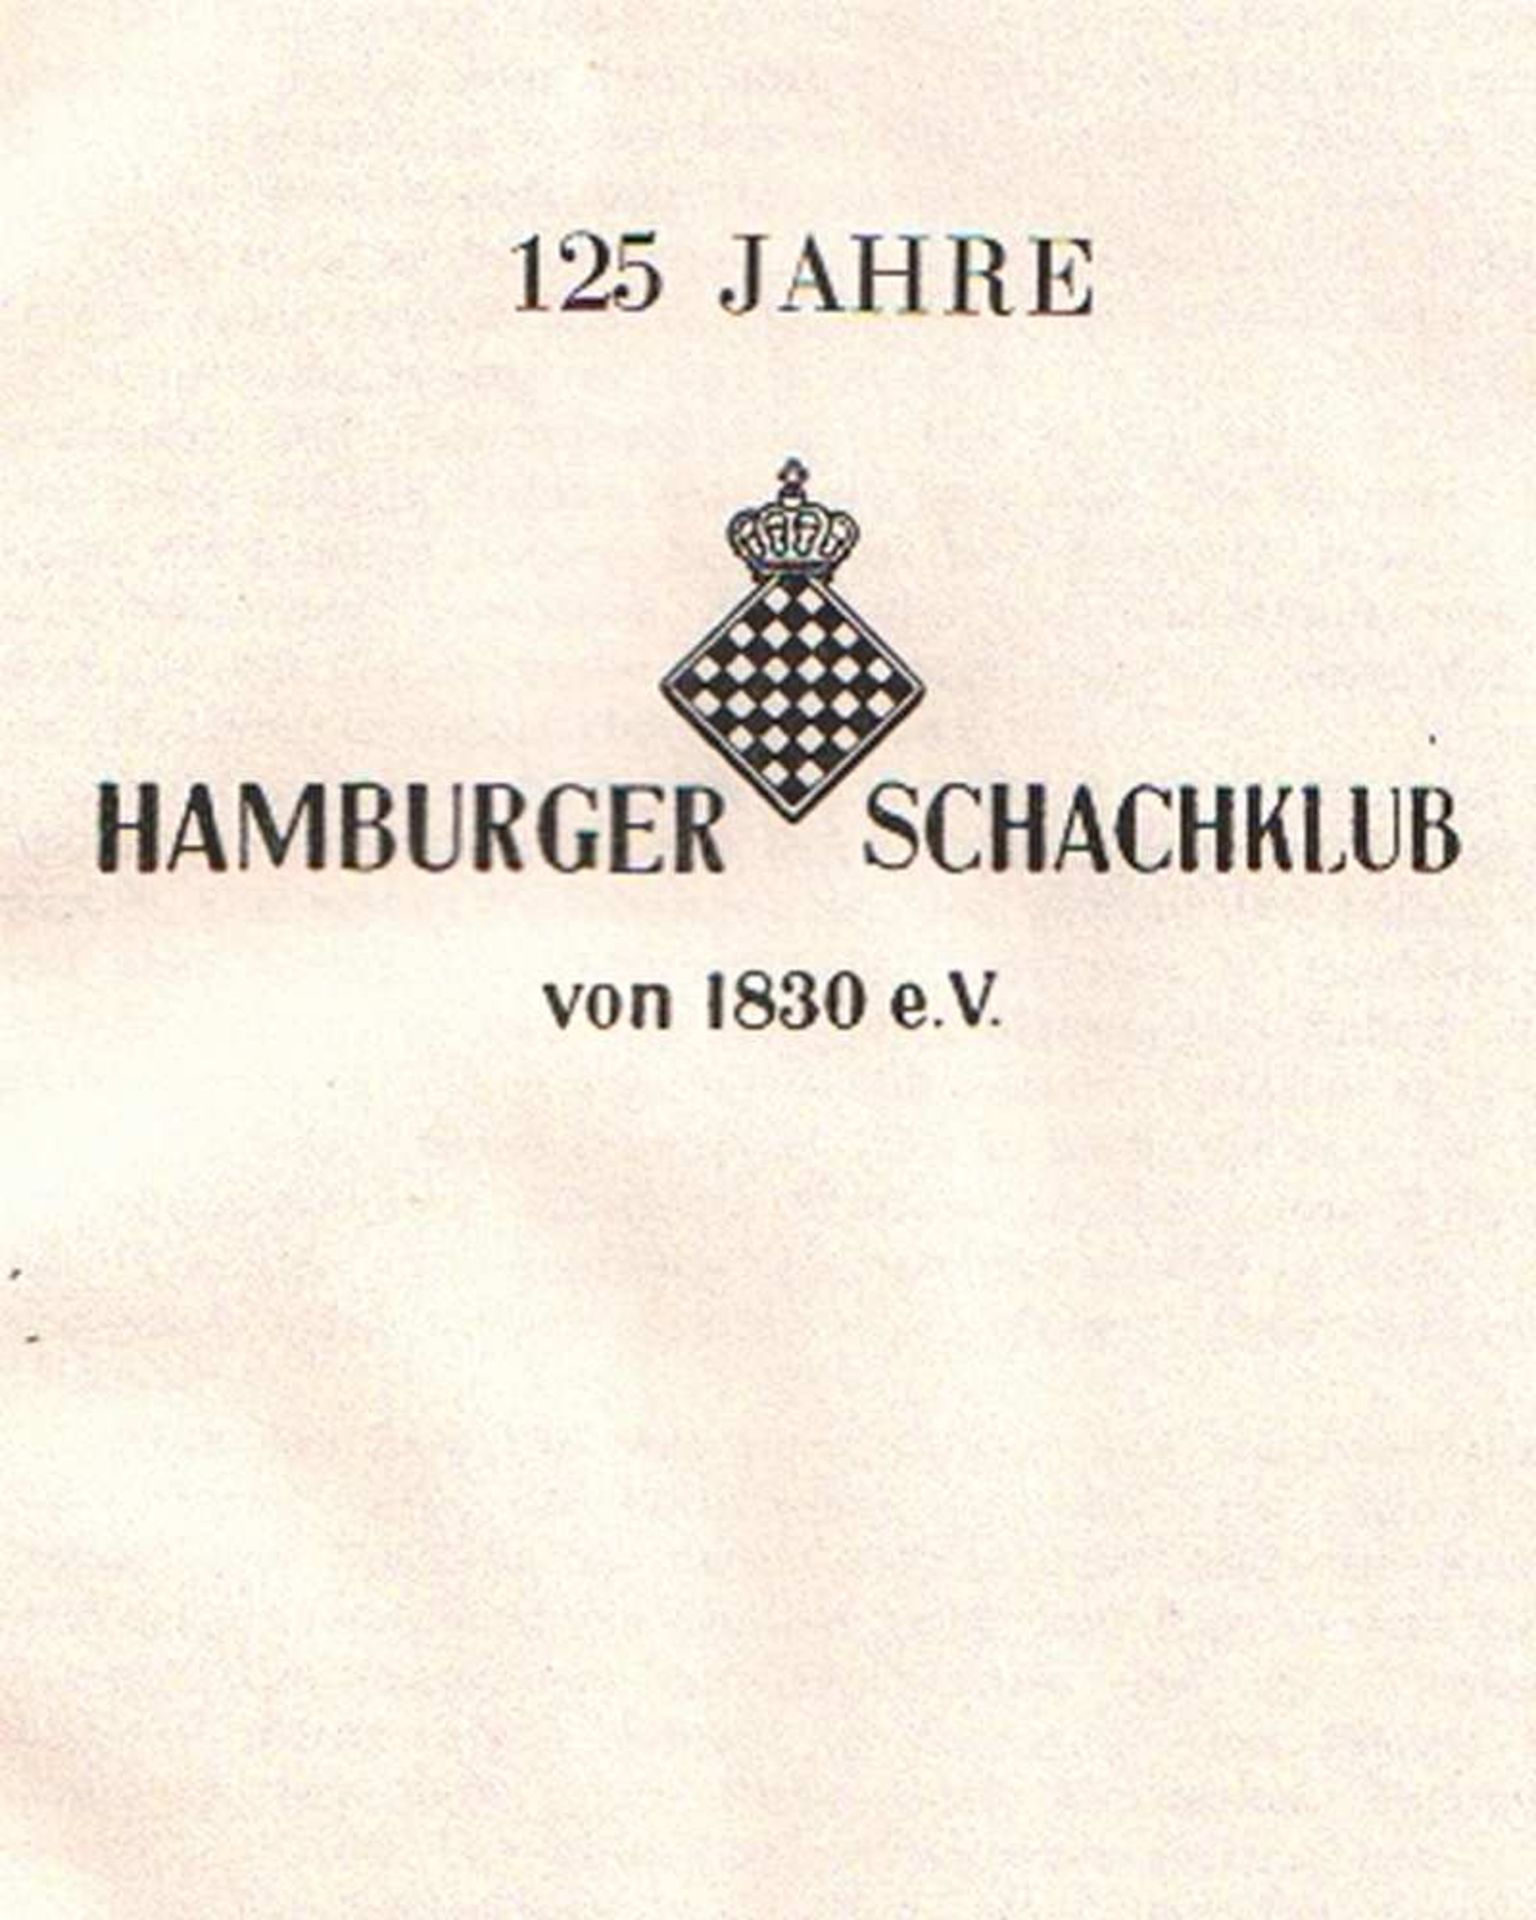 Hamburg. 125 Jahre Hamburger Schachklub von 1830 e. V. (Hamburg 1955). 8°. 40 Seiten. Roter